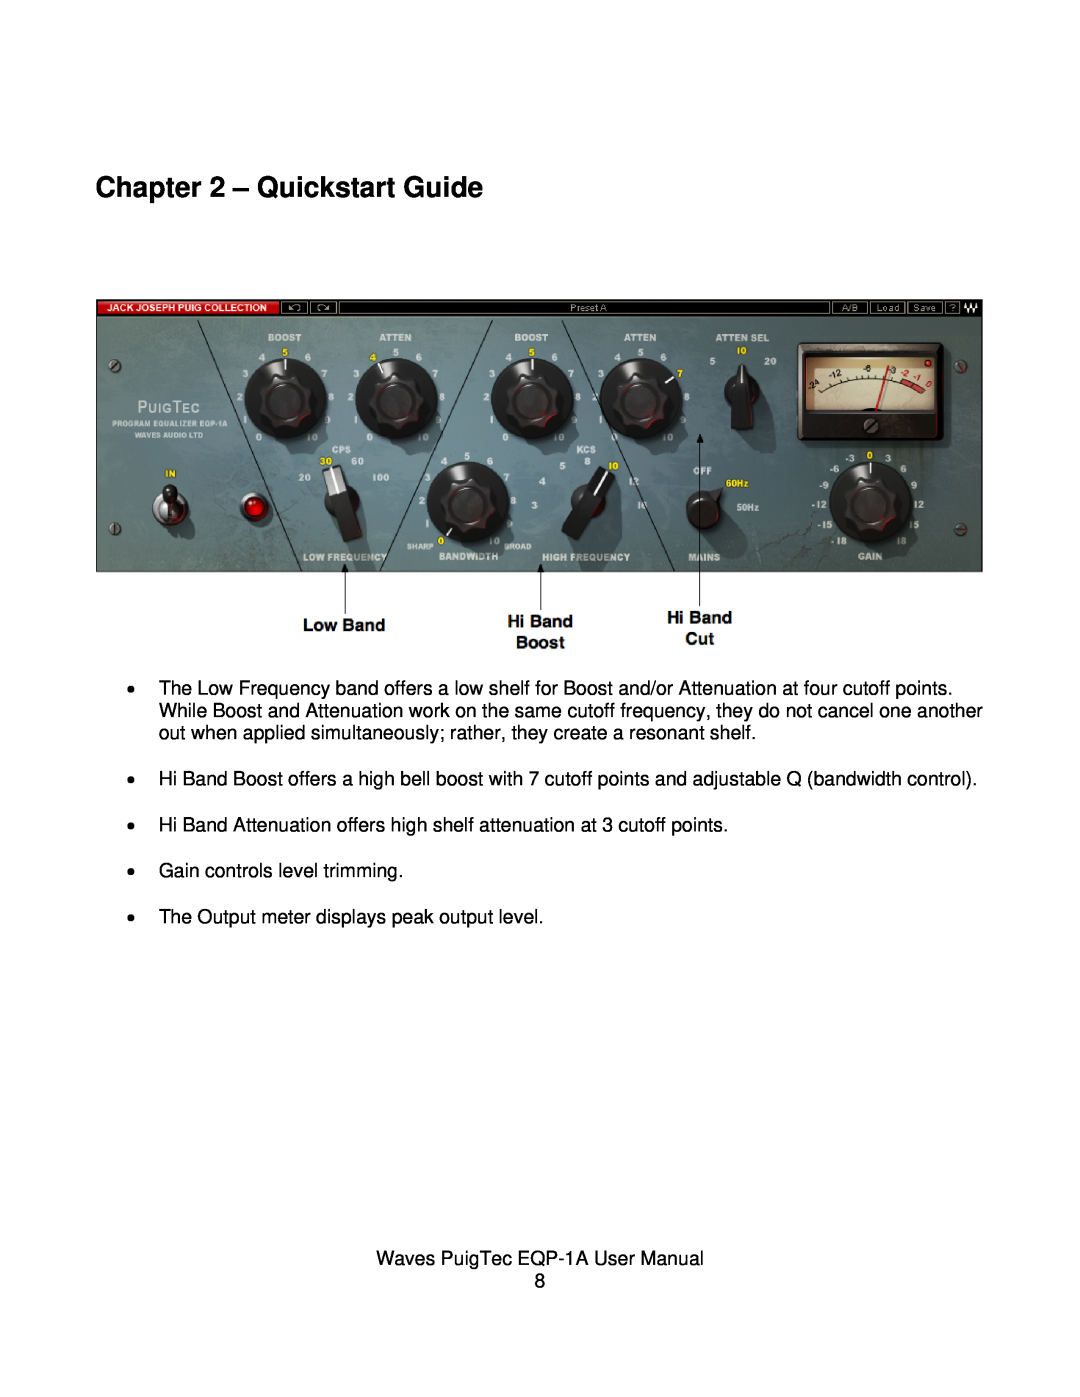 Waves EQP-1A user manual Quickstart Guide 